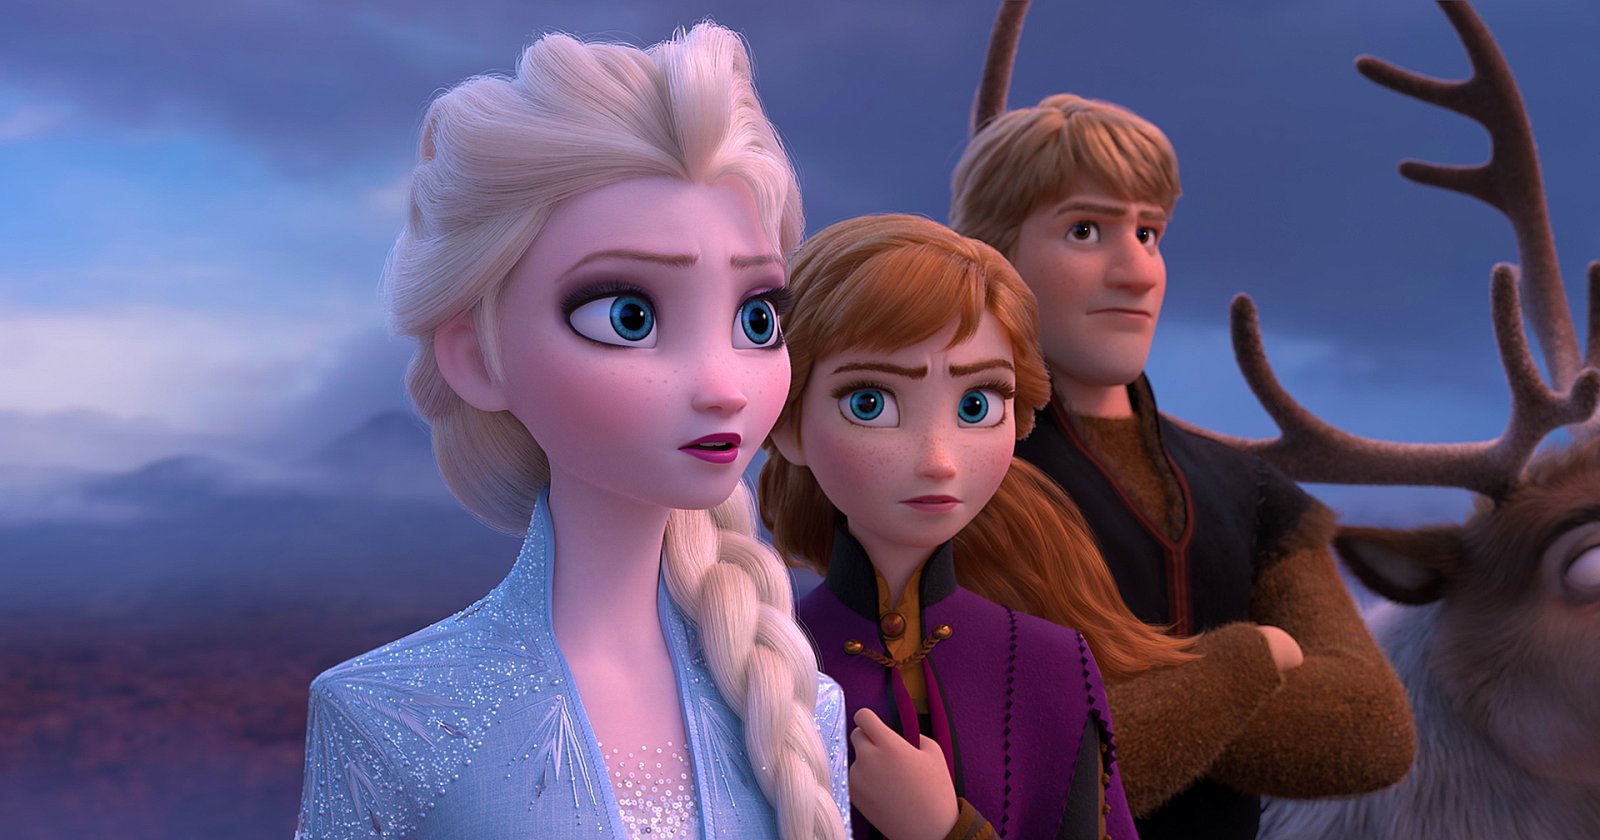 ผู้บริหาร Disney เผย! ‘Frozen’ ไม่ได้มีแค่ภาค 3 แต่กำลังพัฒนาภาค 4 ด้วย